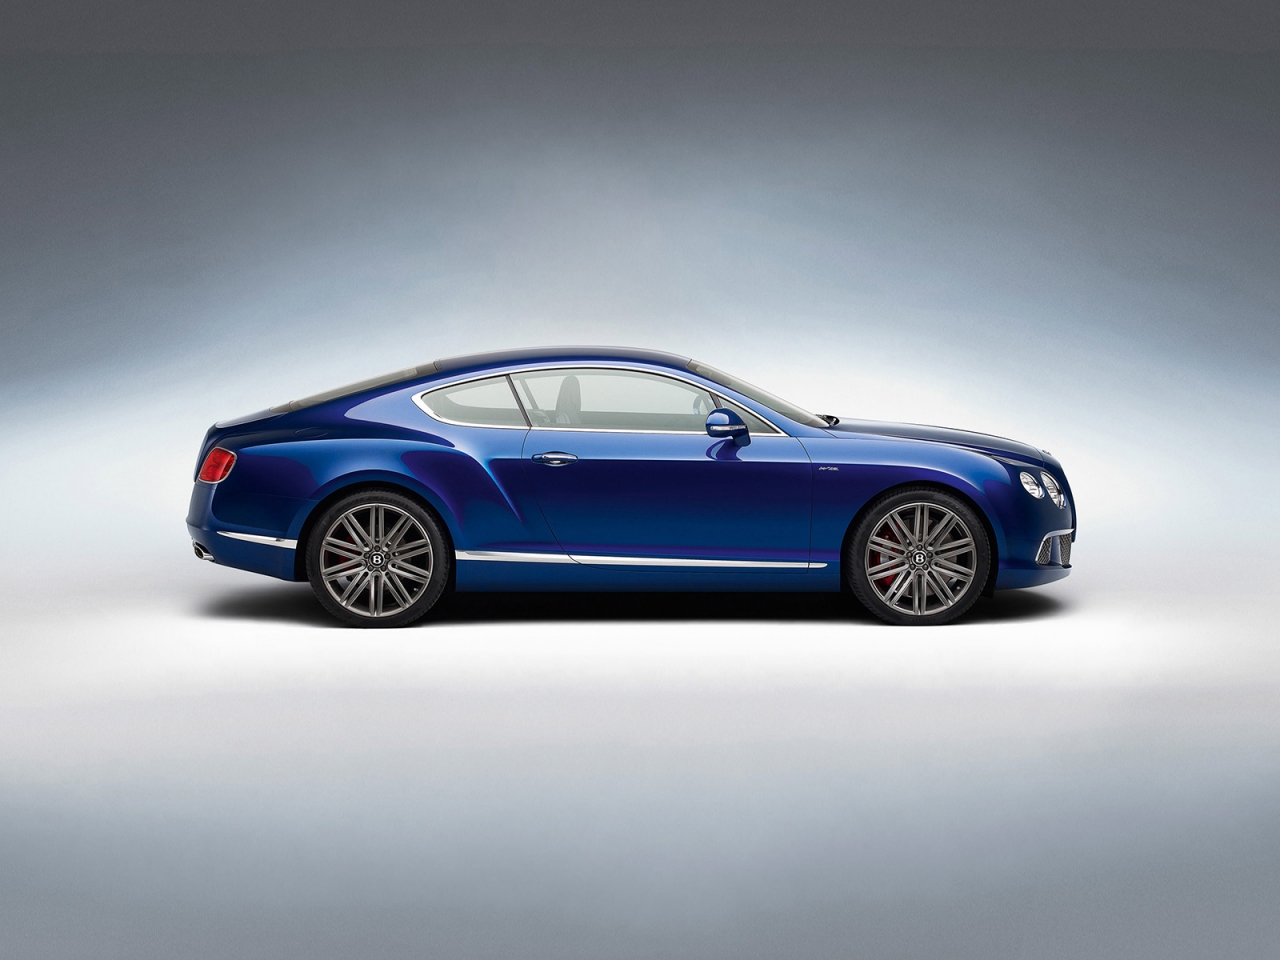 Blue Bentley GT Studio for 1280 x 960 resolution